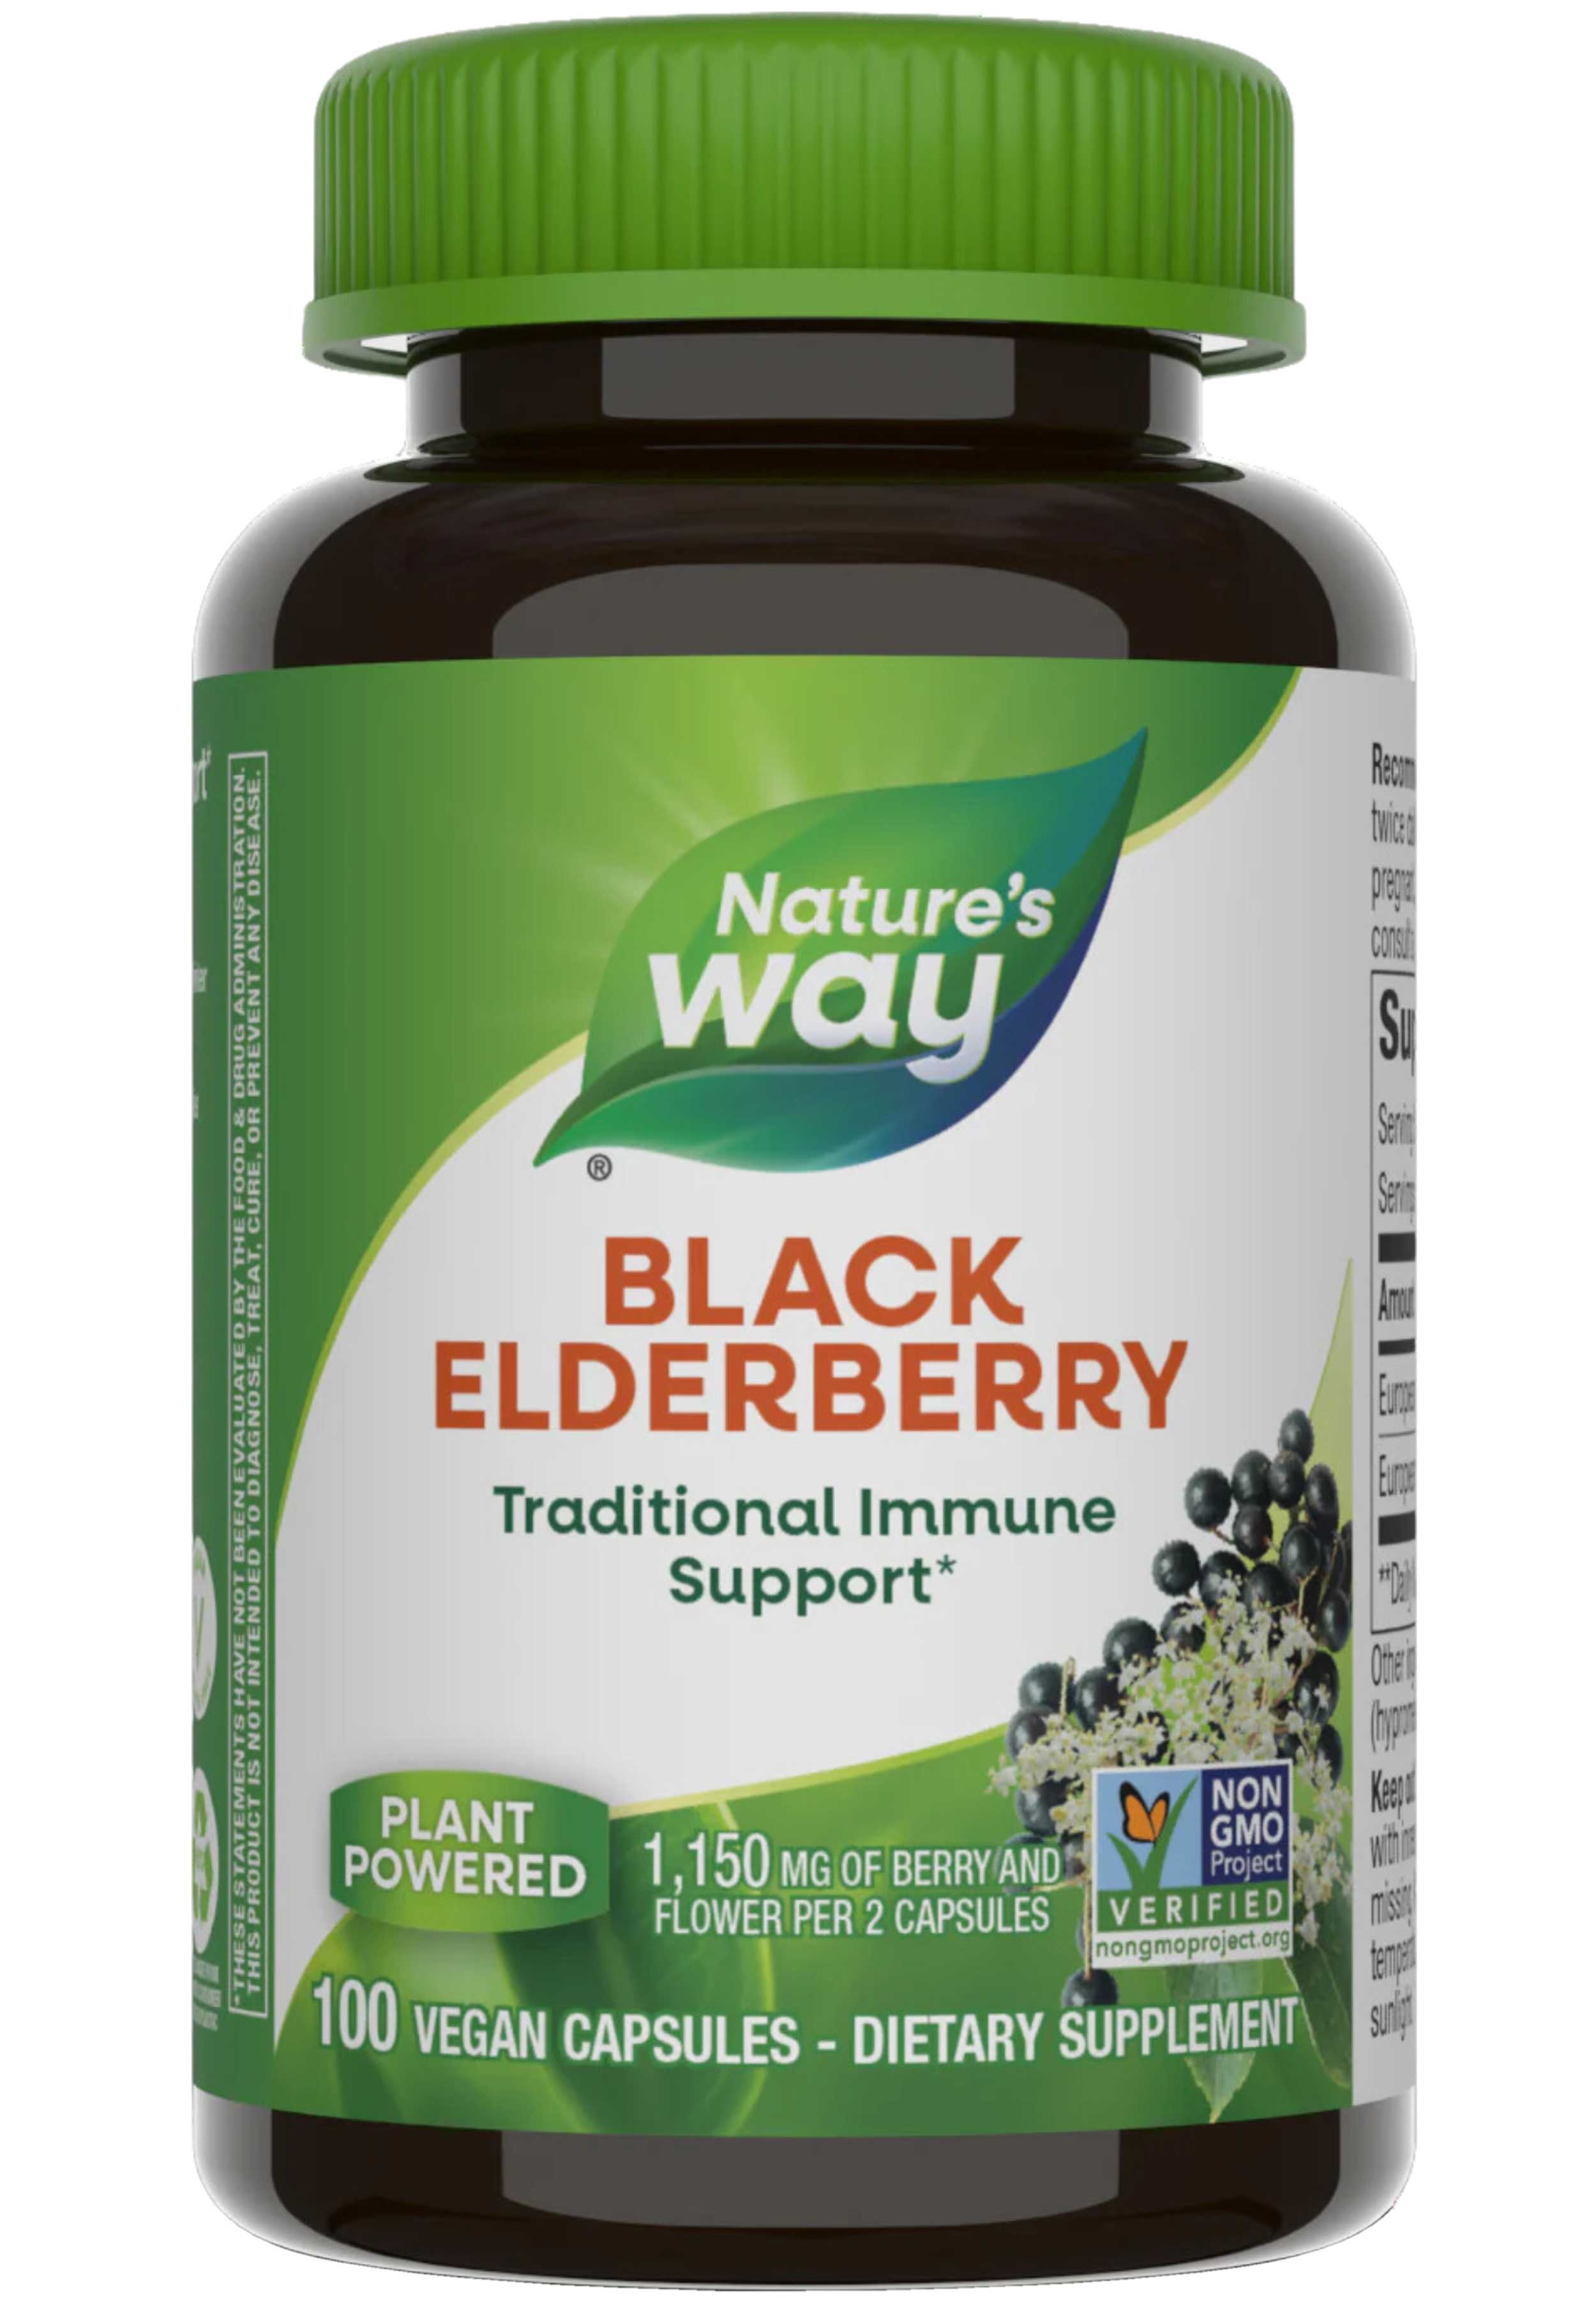 Nature's Way Black Elderberry